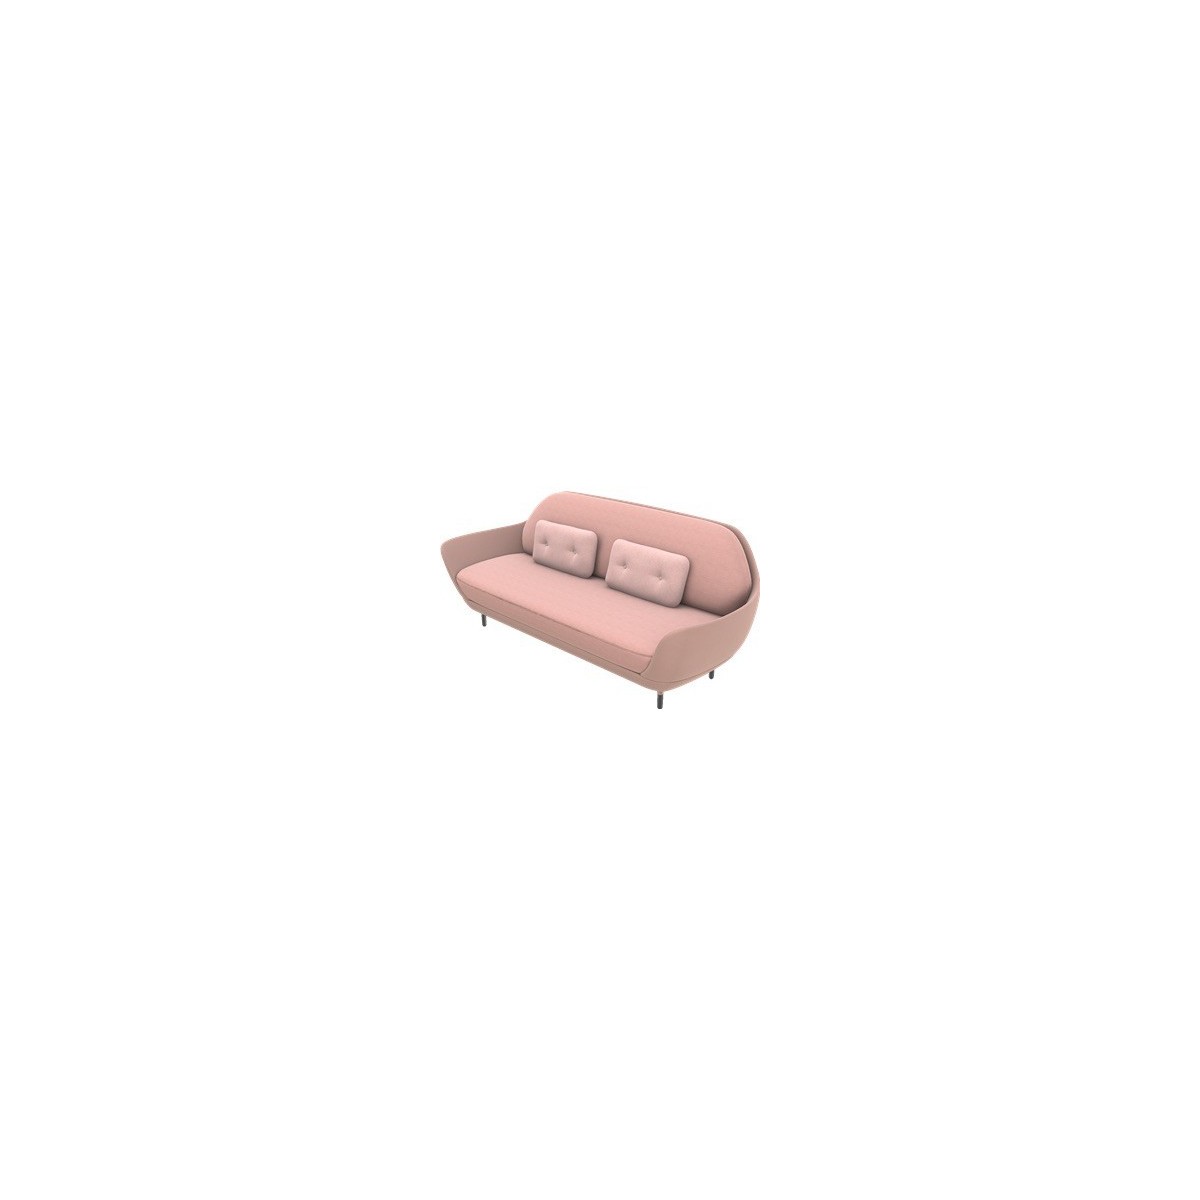 light pink - Designer Selection - Favn sofa